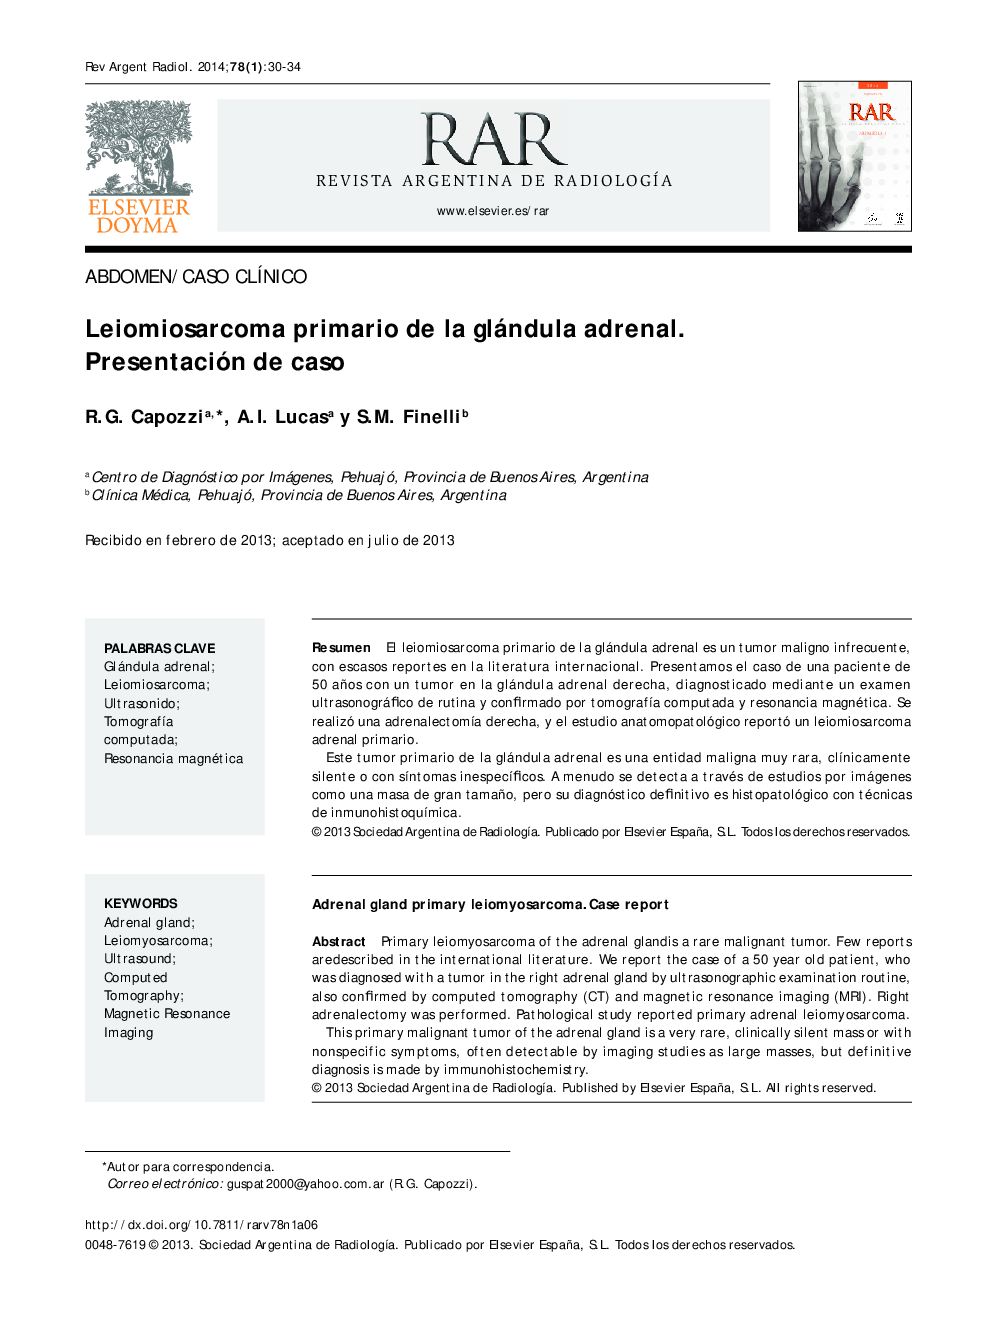 Leiomiosarcoma primario de la glándula adrenal. Presentación de caso